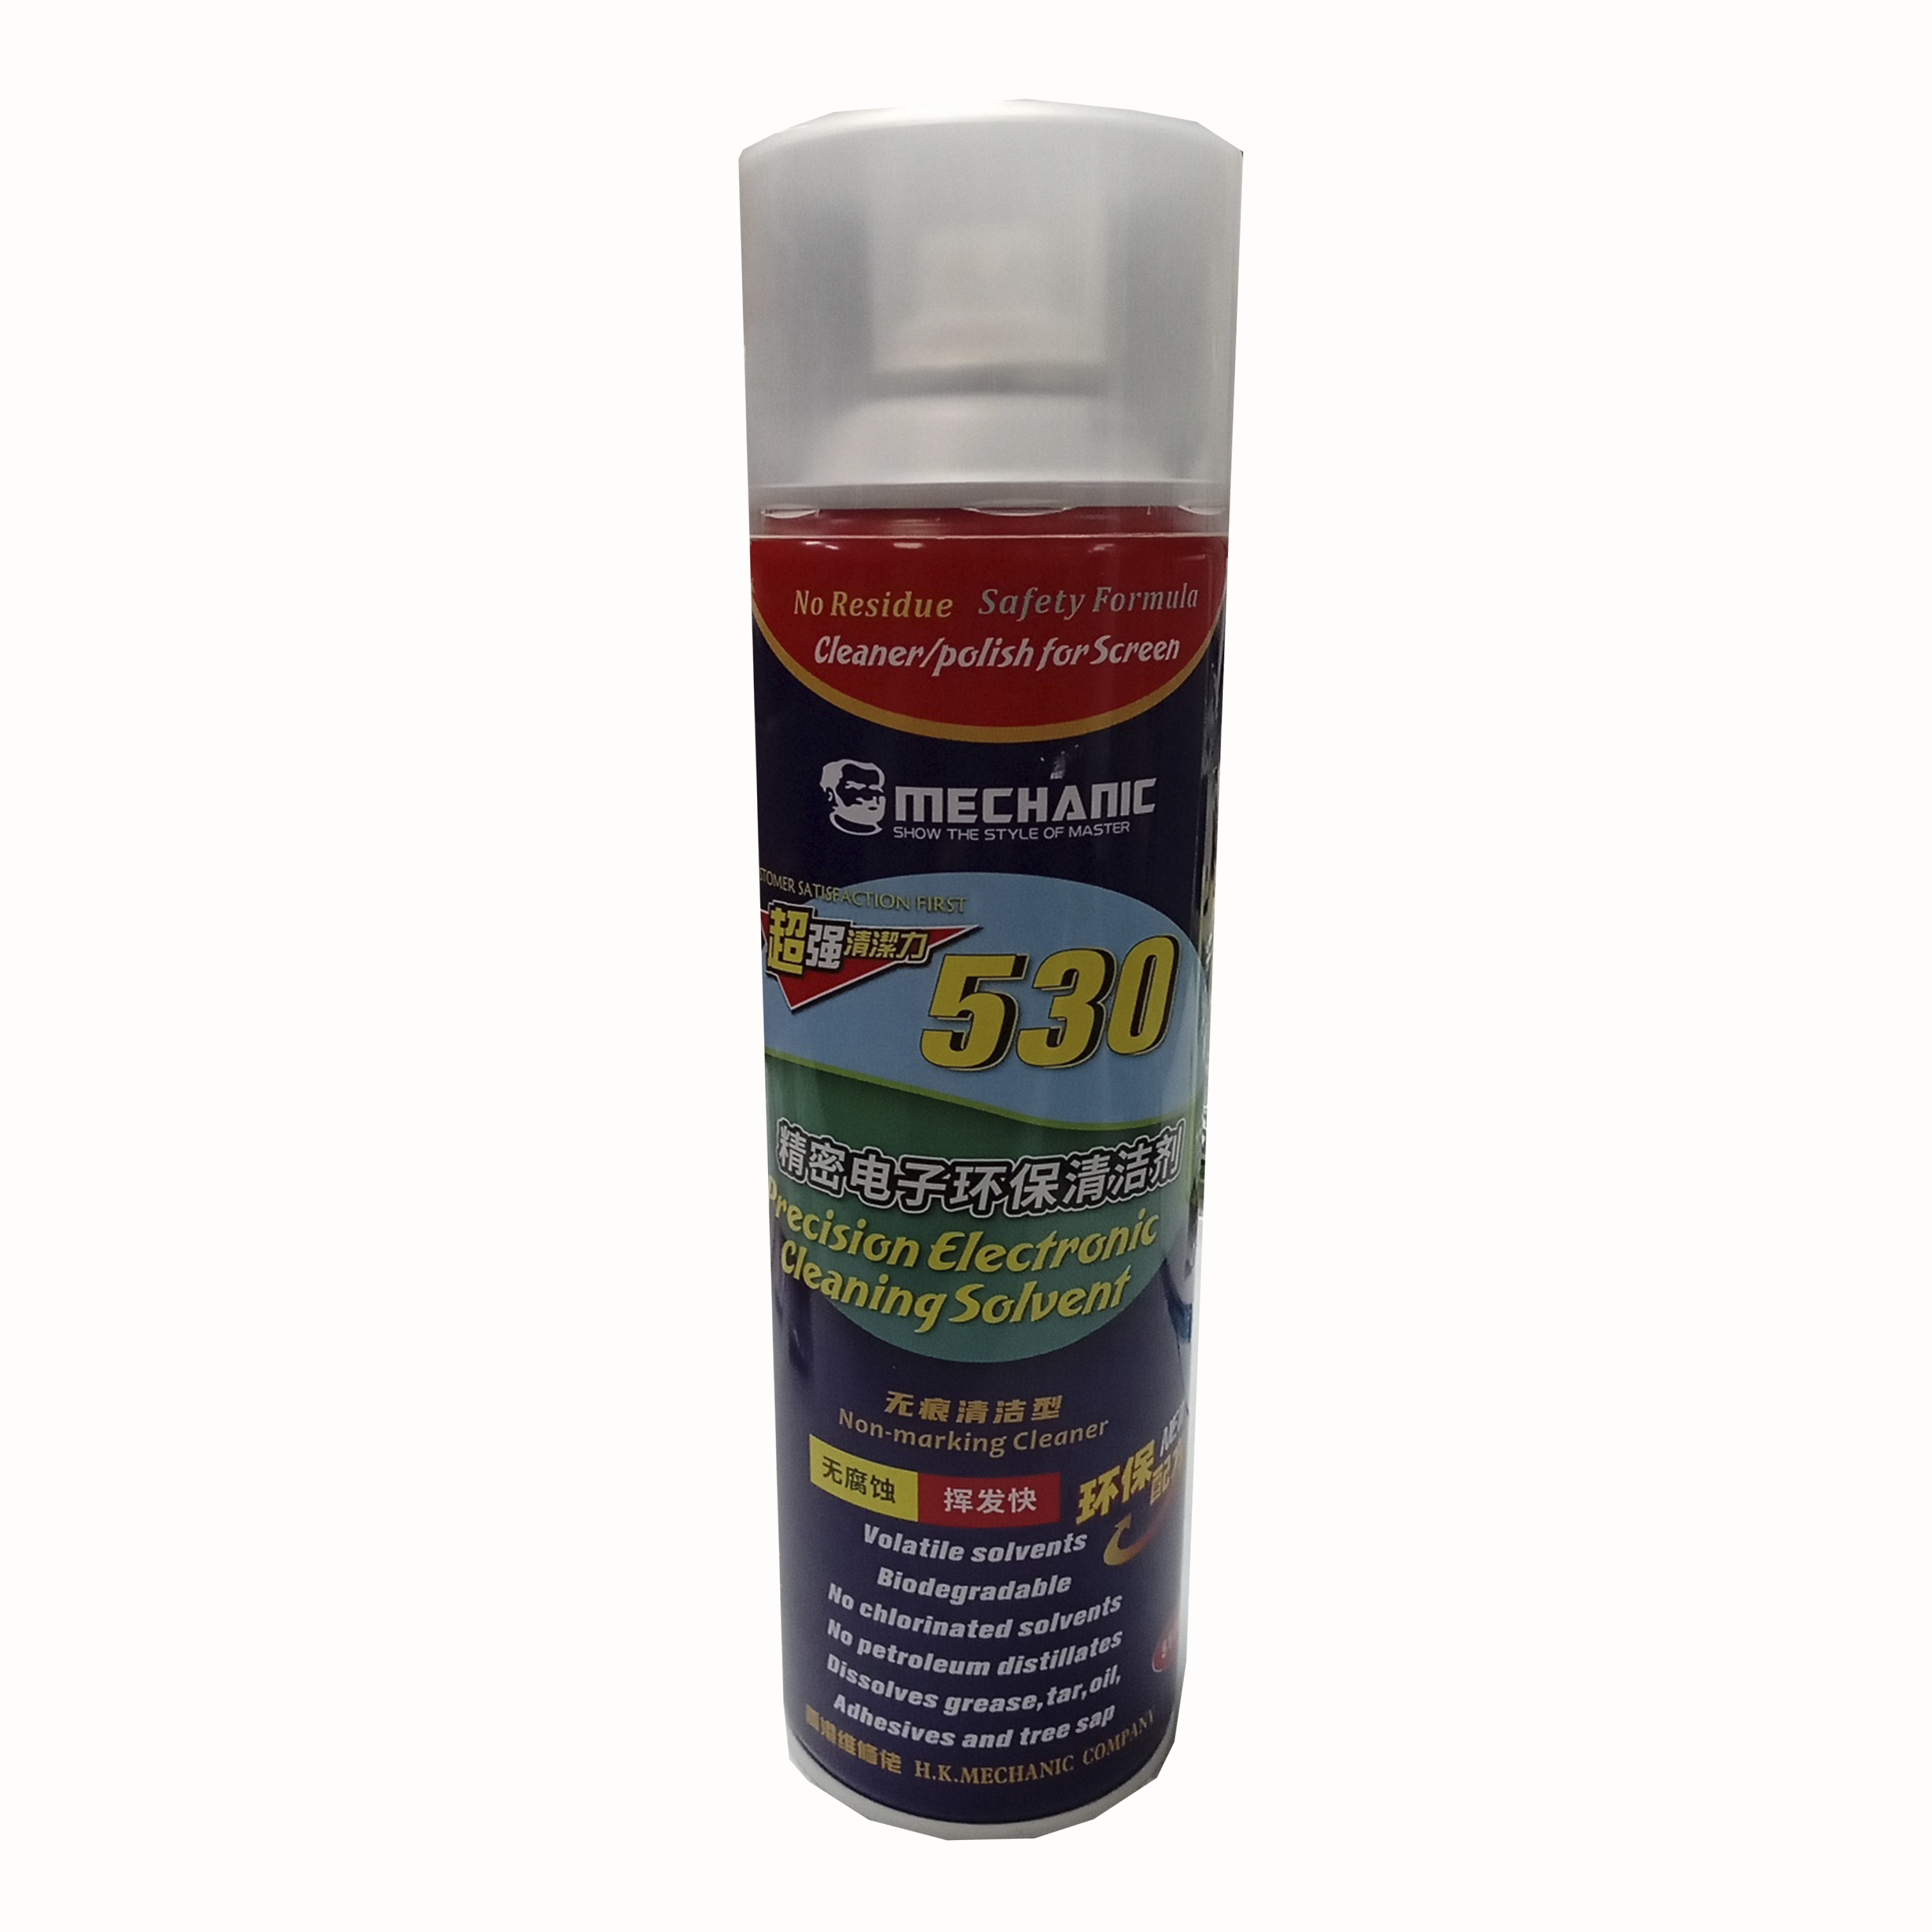 Спрей-очиститель Mechanic 530 Cleaning Solvent (для очистки контактов,микросхем и чипов) 550ml